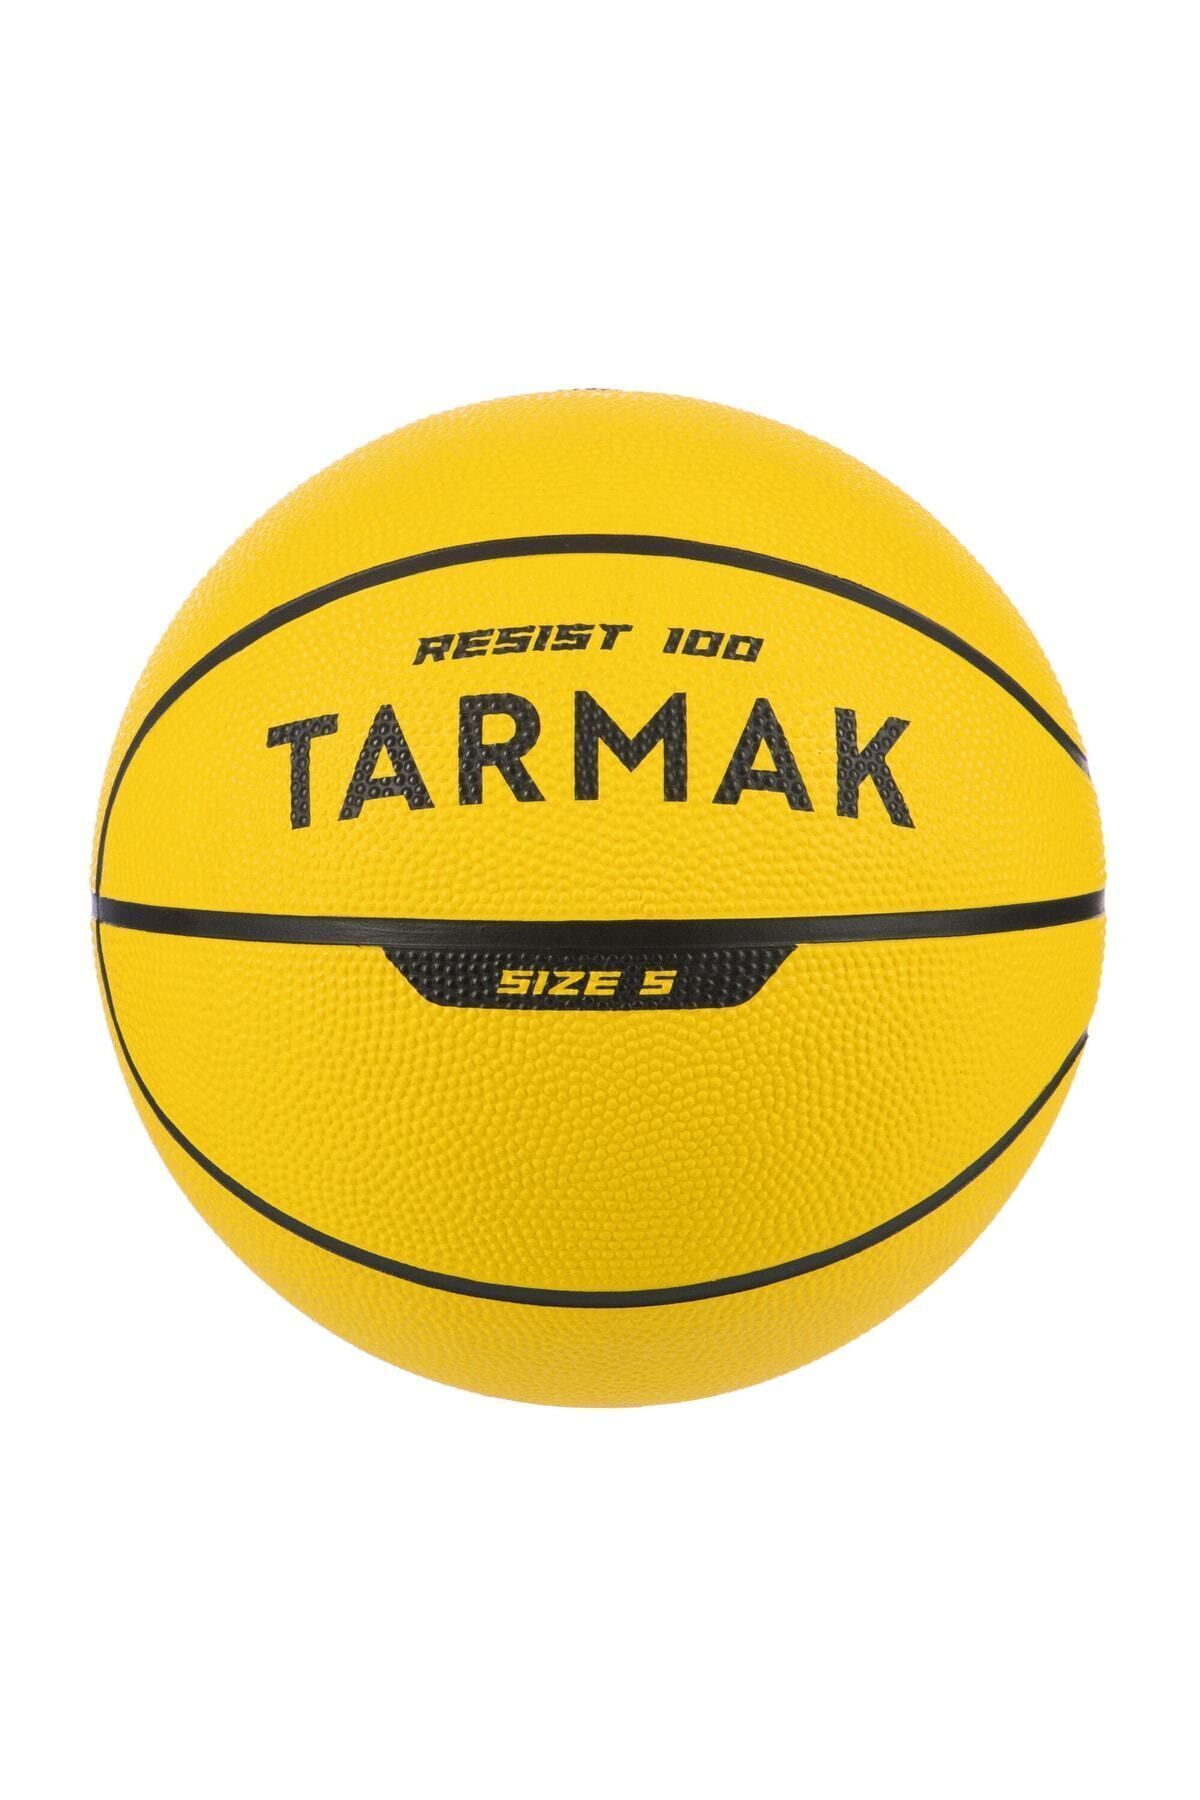 Decathlon Tarmak Basketbol Topu - 5 Numara - Sarı - R100